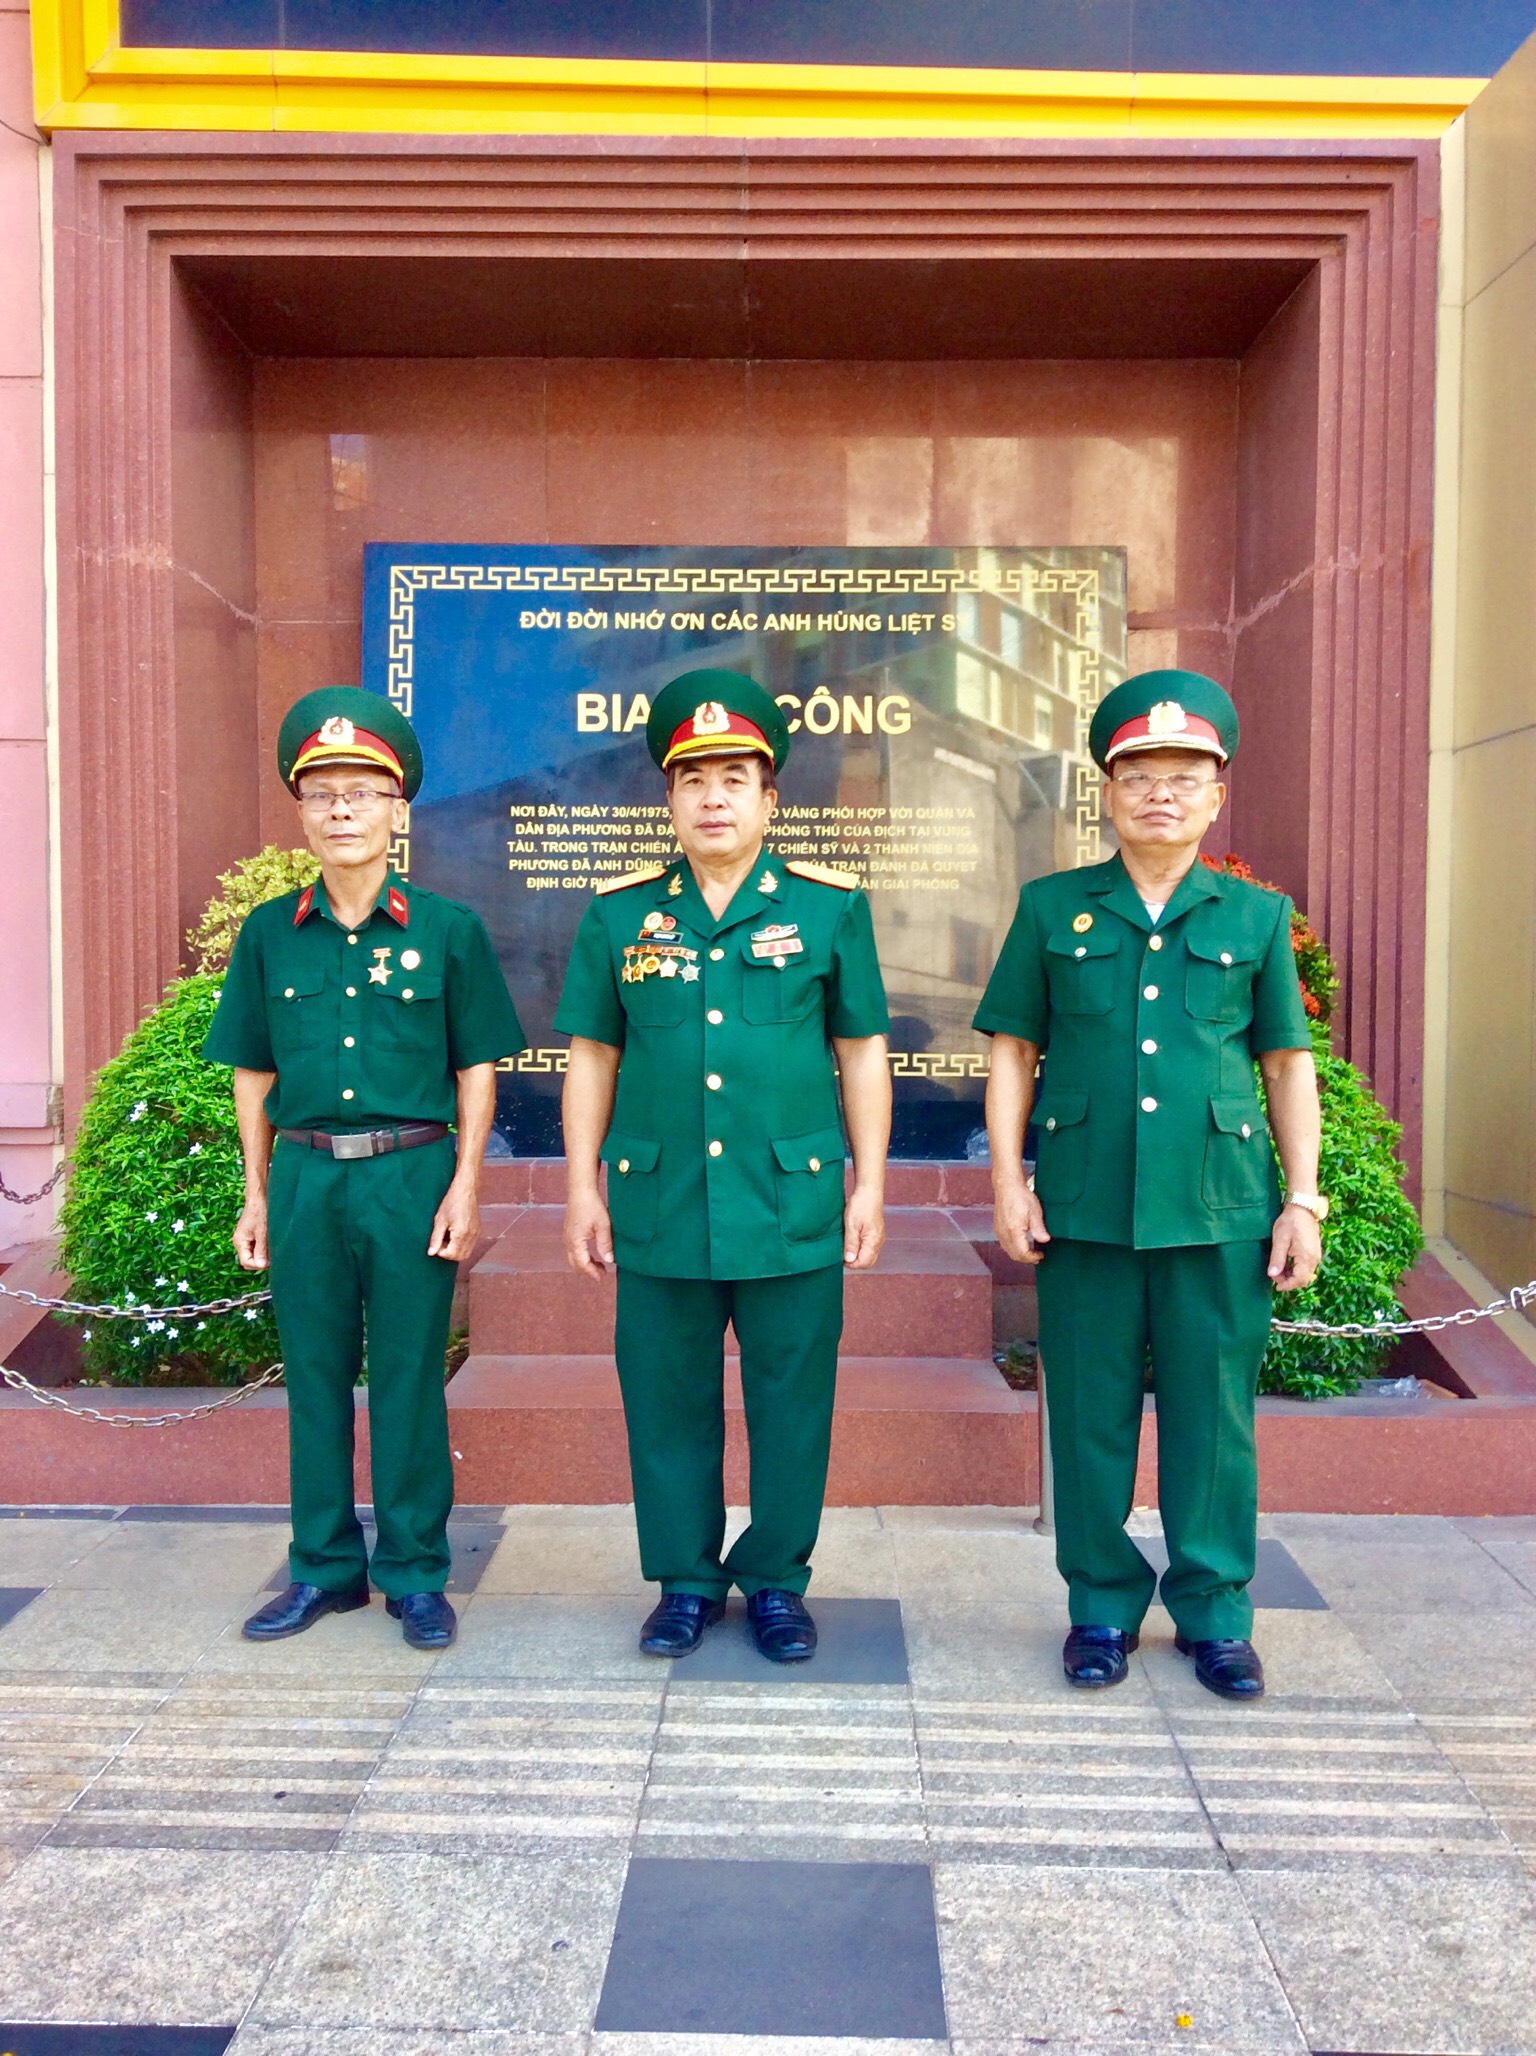  Đại diện Sư đoàn 3 Sao Vàng thăm và chụp ảnh lưu niệm tại Bia Ghi công các Anh hùng Liệt sĩ trong trận đánh Palace, giải phóng Vũng Tàu.